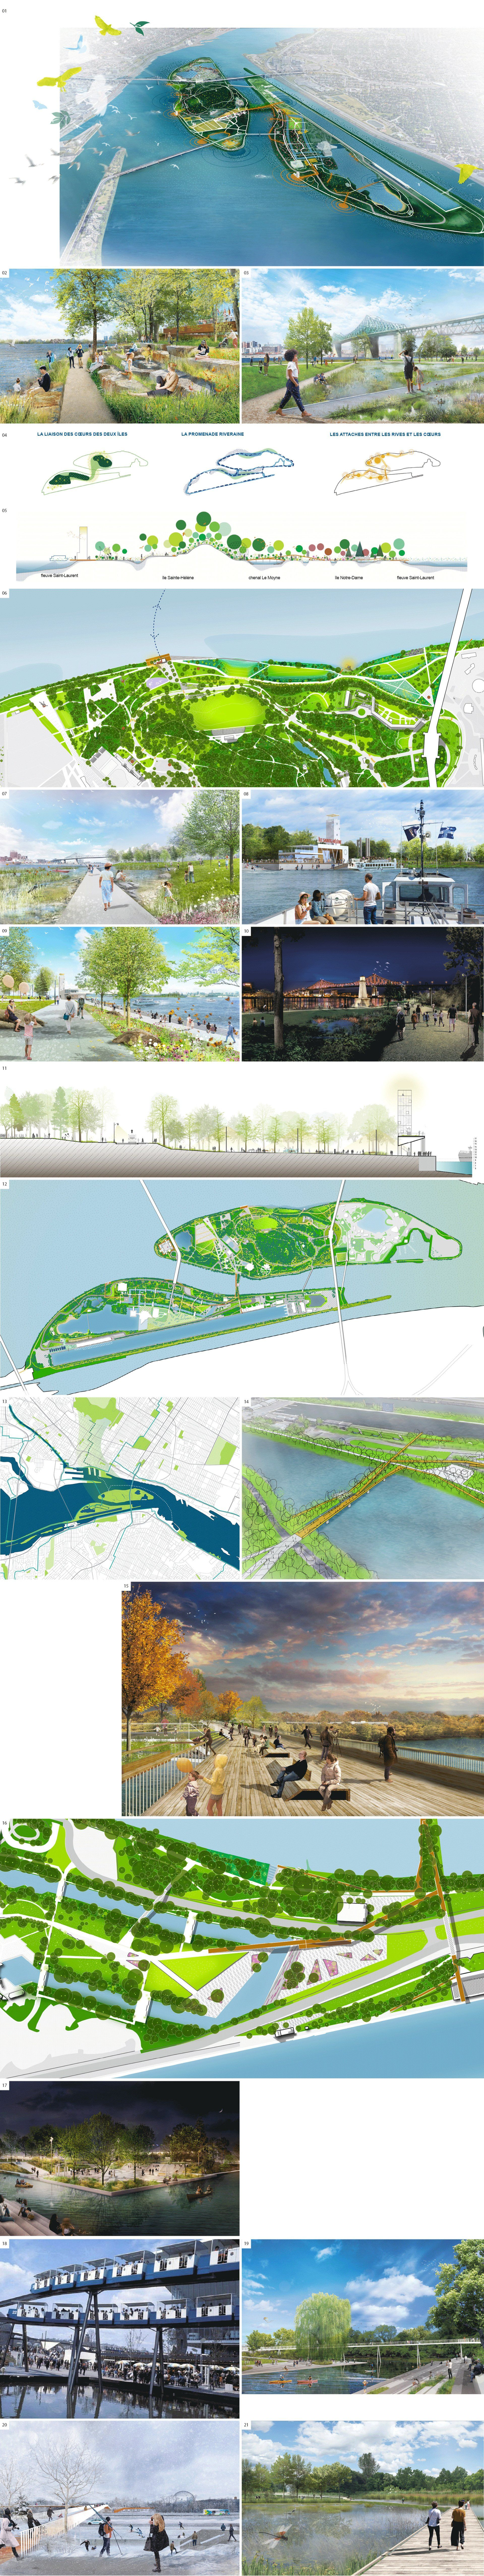 Parc Jean-Drapeau 2020-2030 Master Plan